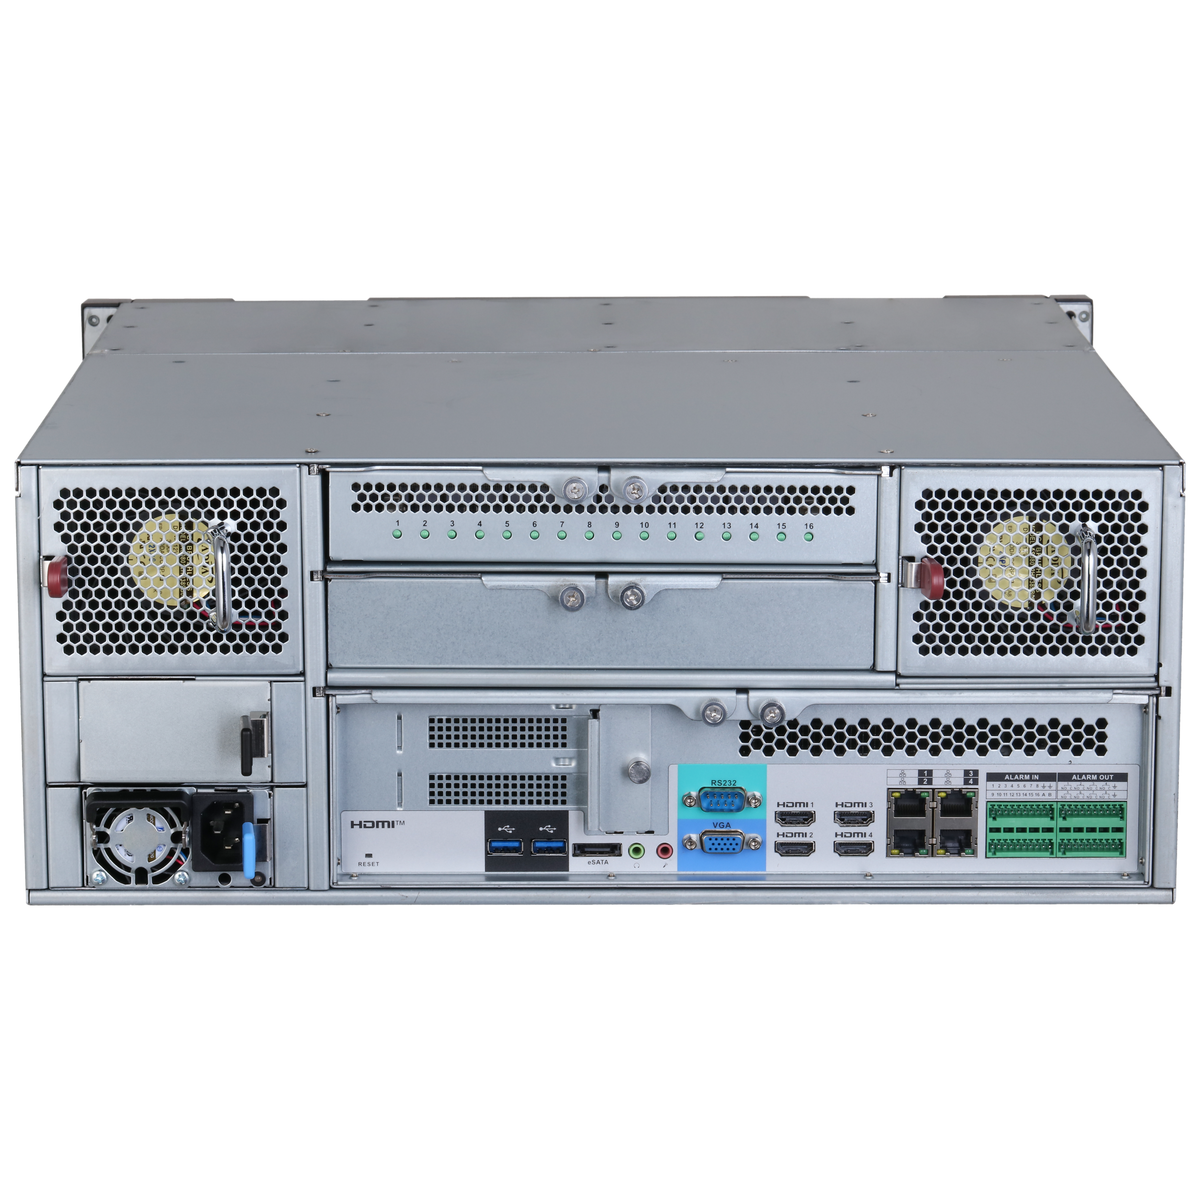 DAHUA IVSS7124-8I 256CH 4U Intelligent Video Surveillance Server